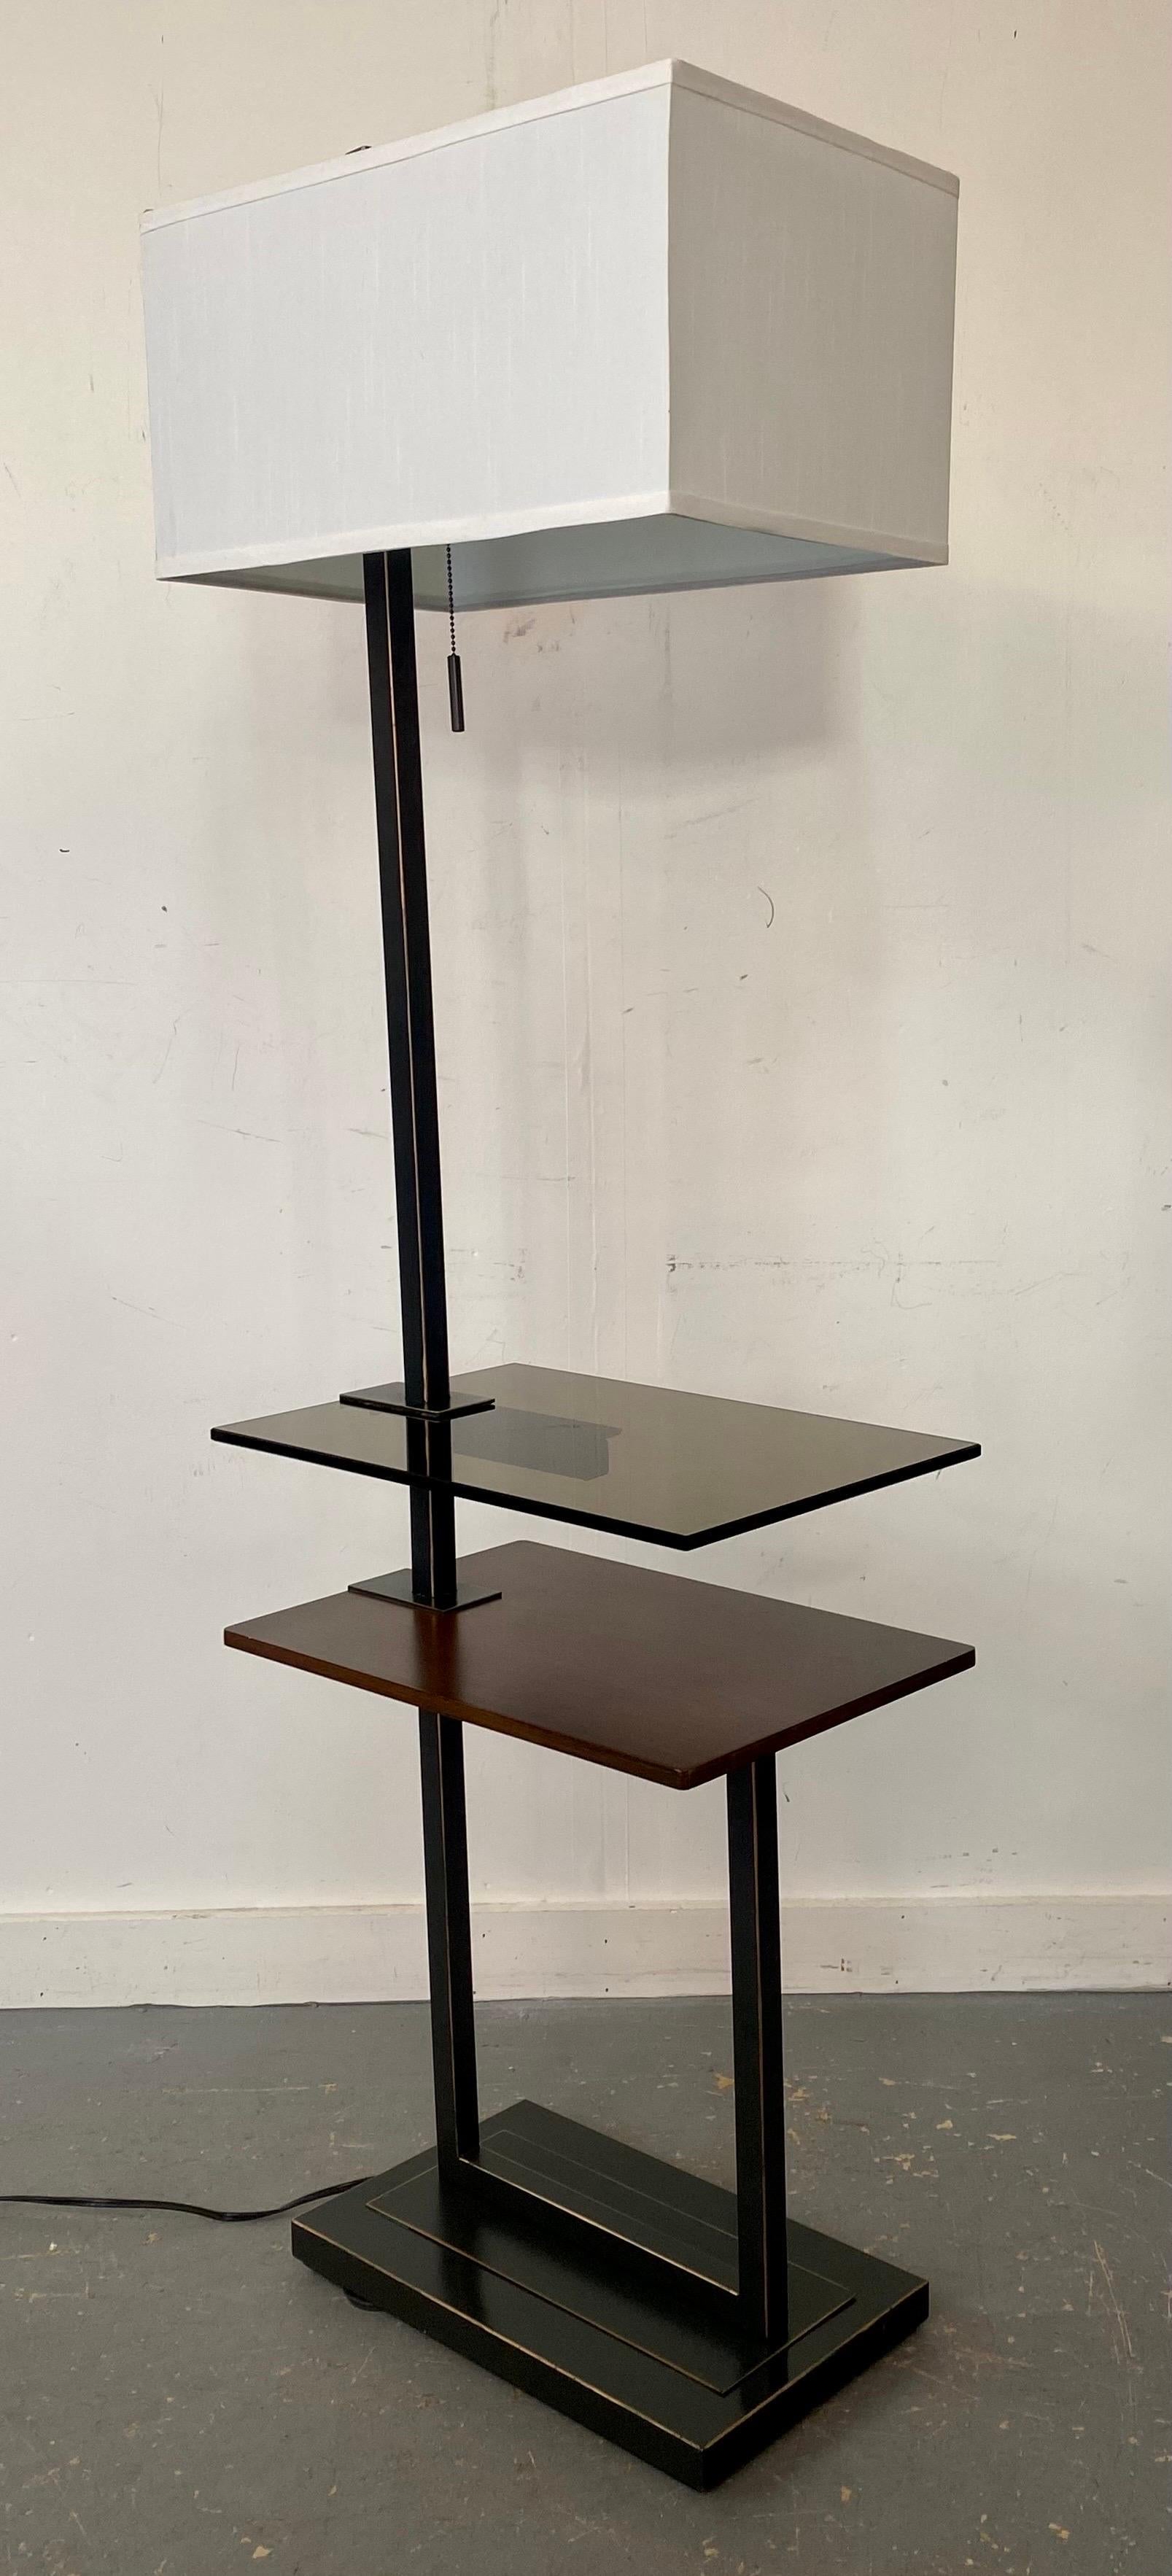 Un lampadaire de table à deux niveaux de qualité, de style moderne du milieu du siècle dernier. Le lampadaire à cadre noir est doté d'une base rectangulaire supportant une table/un plateau en bois de cerisier. La deuxième étagère/plateau est en